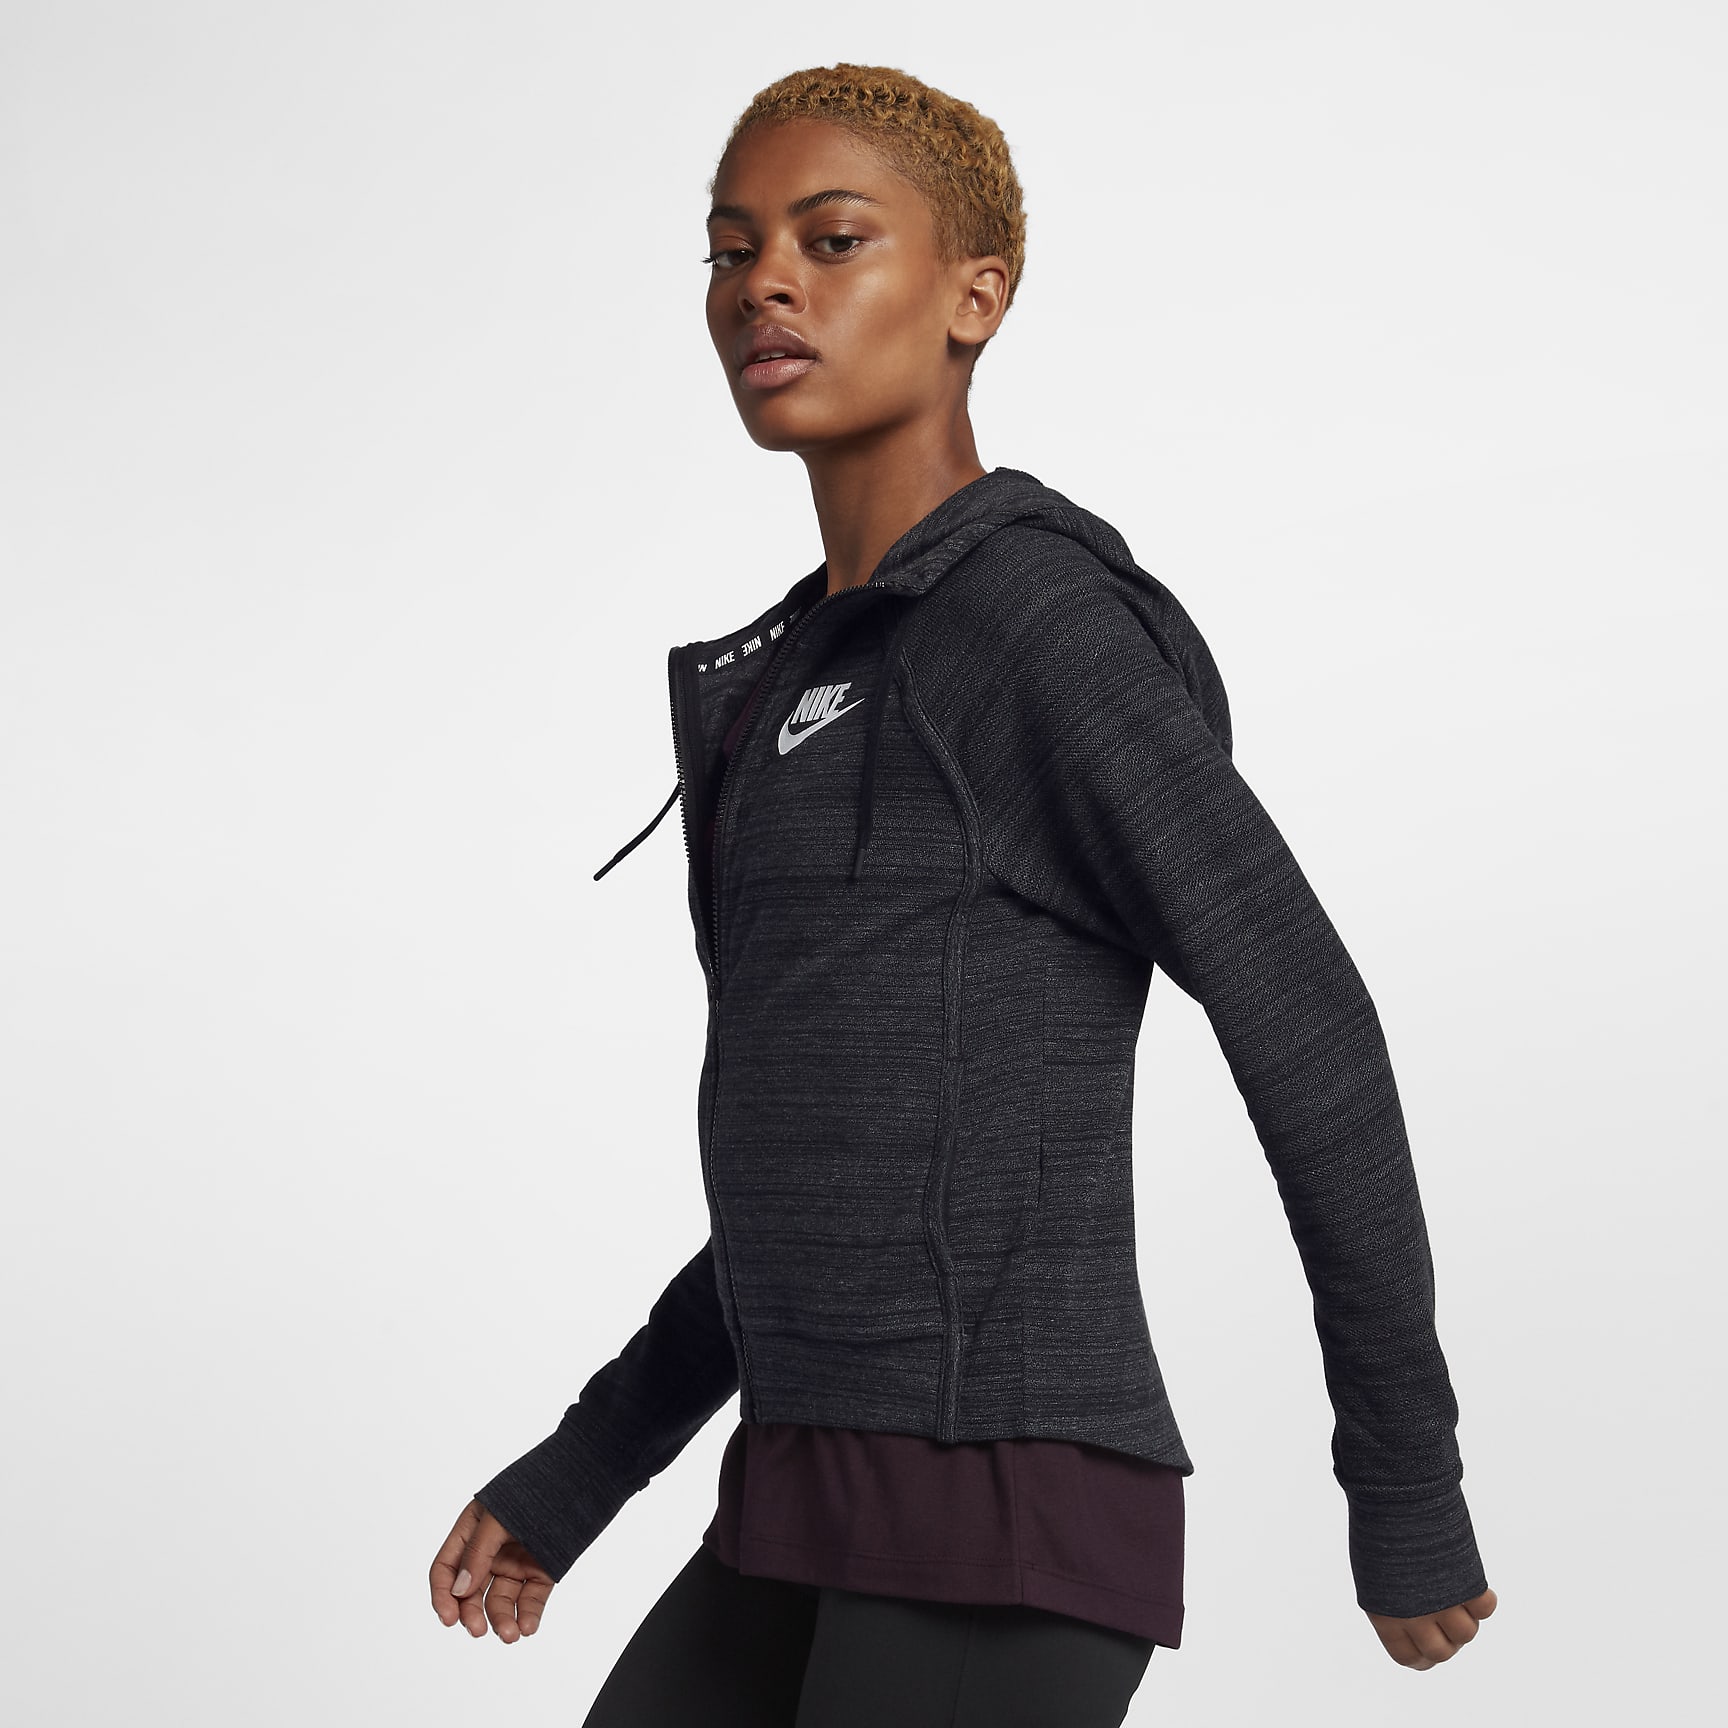 Nike Sportswear Advance 15 Women's Knit Jacket. Nike BG